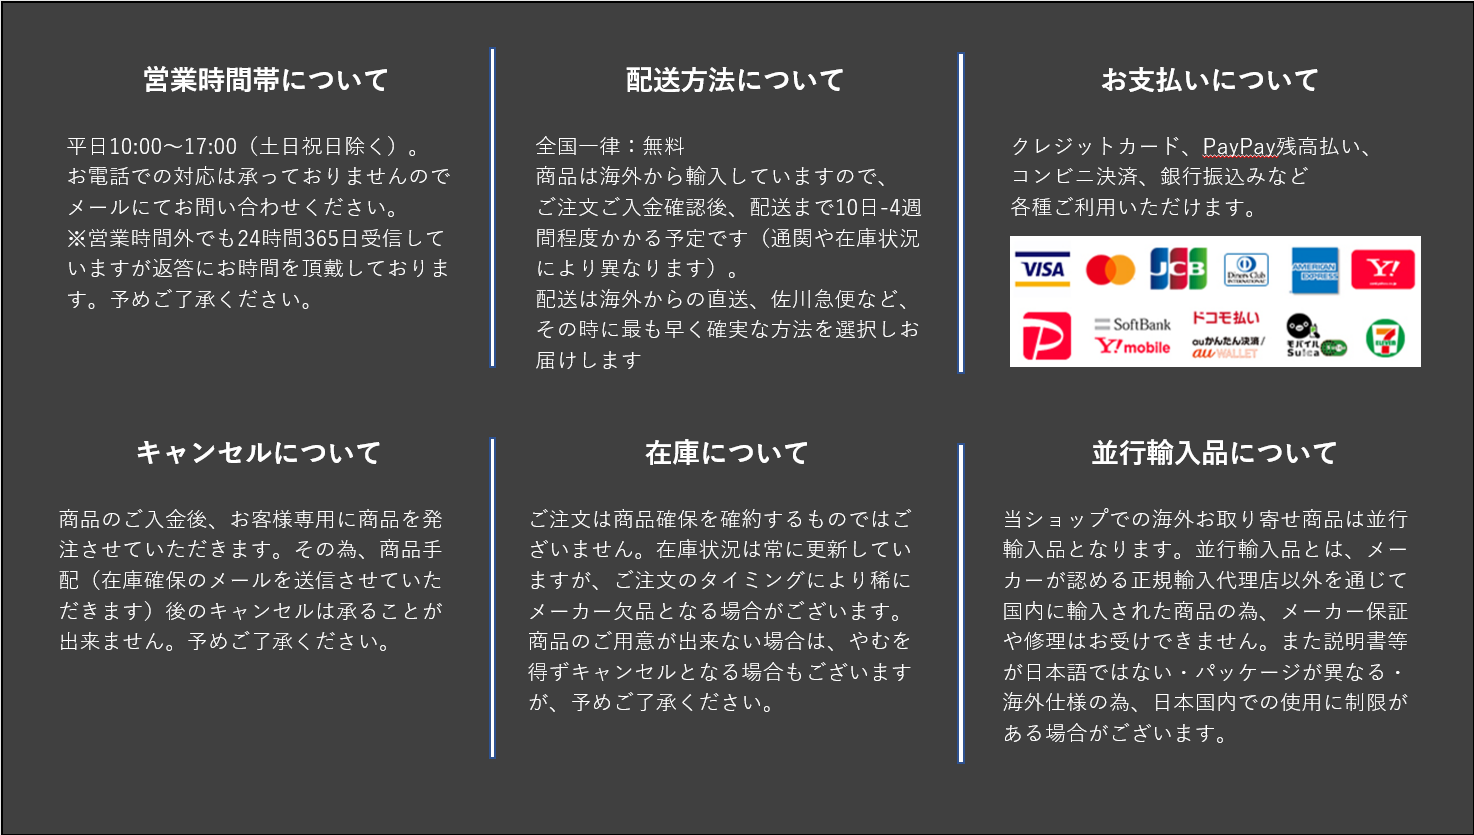 Vikisda For  Macbook Air 13 2020 キーボードカバー 日本語JIS配列 保護 フィルム 1枚 防指紋 防滴 防塵 超耐磨 高い透明感 (並行輸入品)